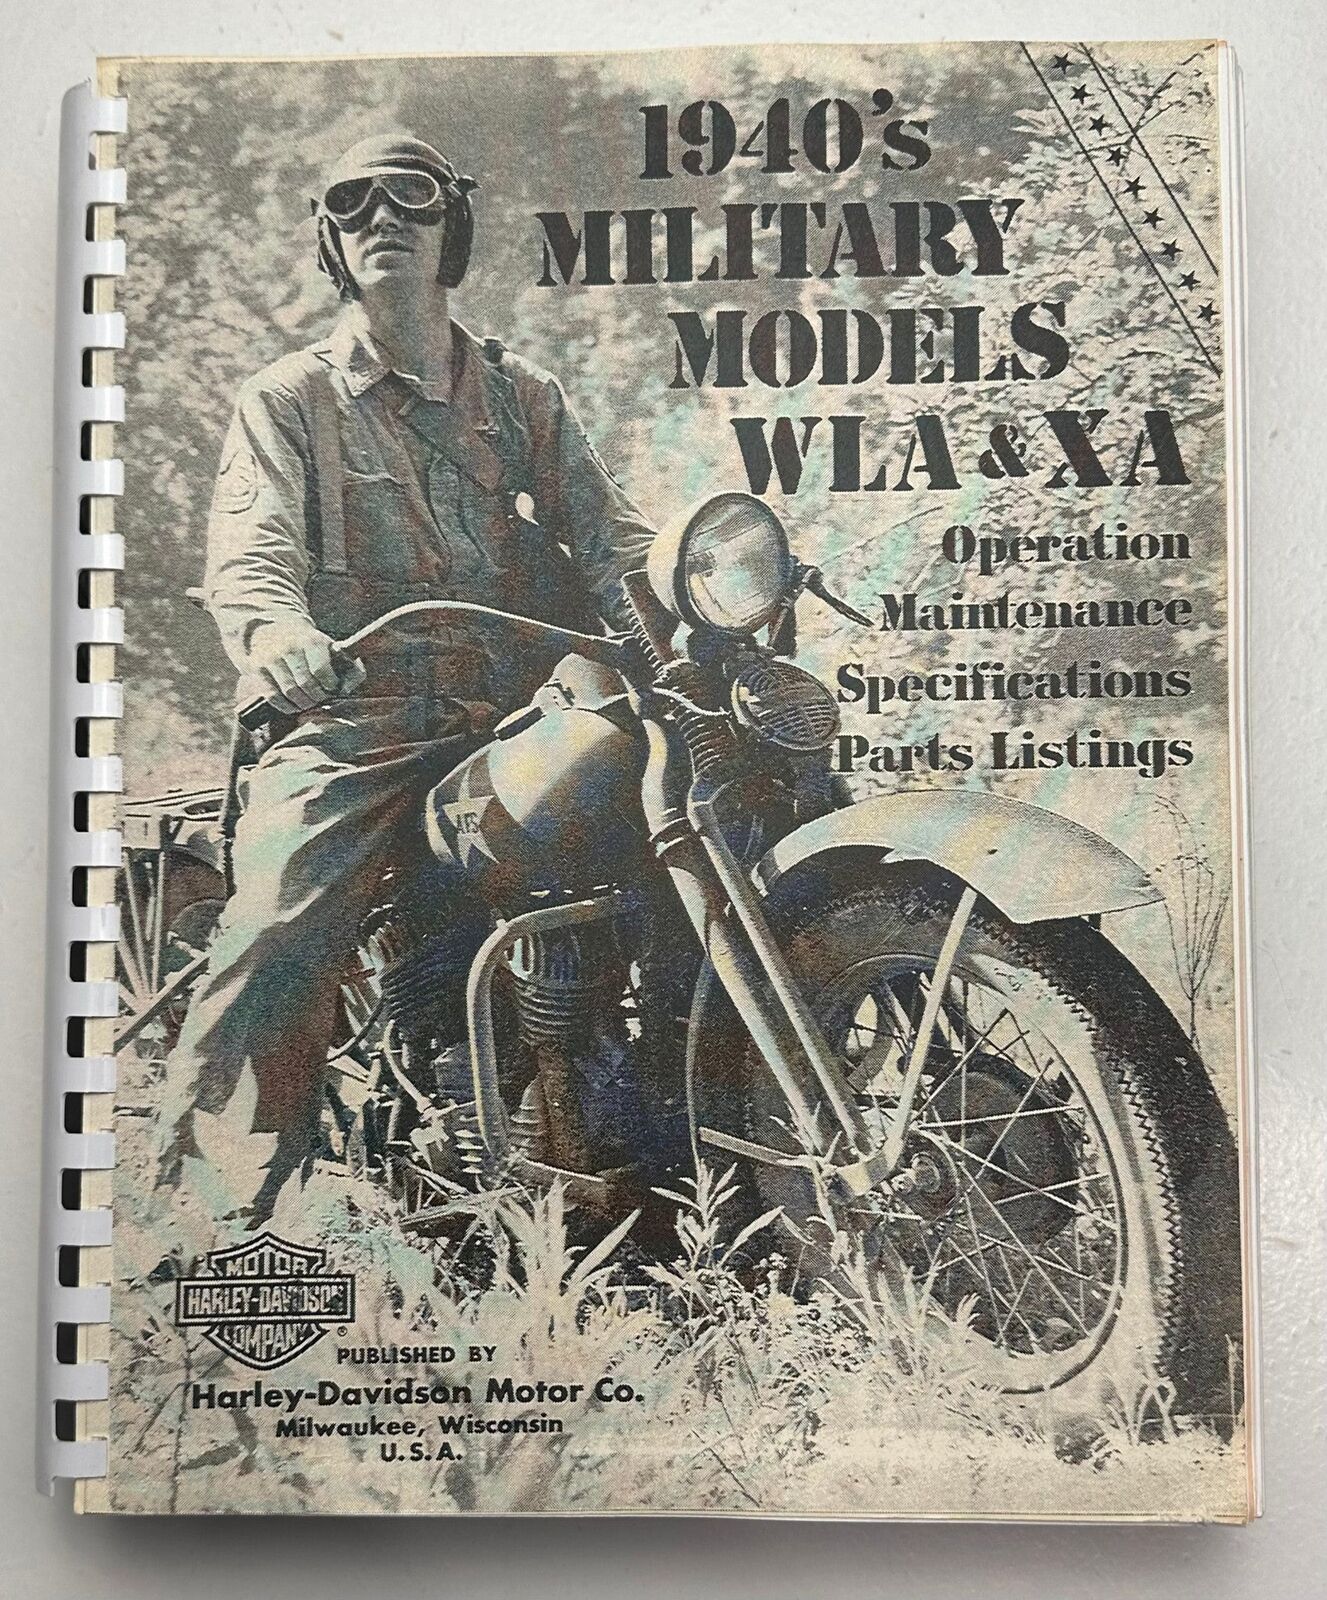 1940\'s Harley Davidson Motorcycle Models WLA & XA Operation Parts Service Manual